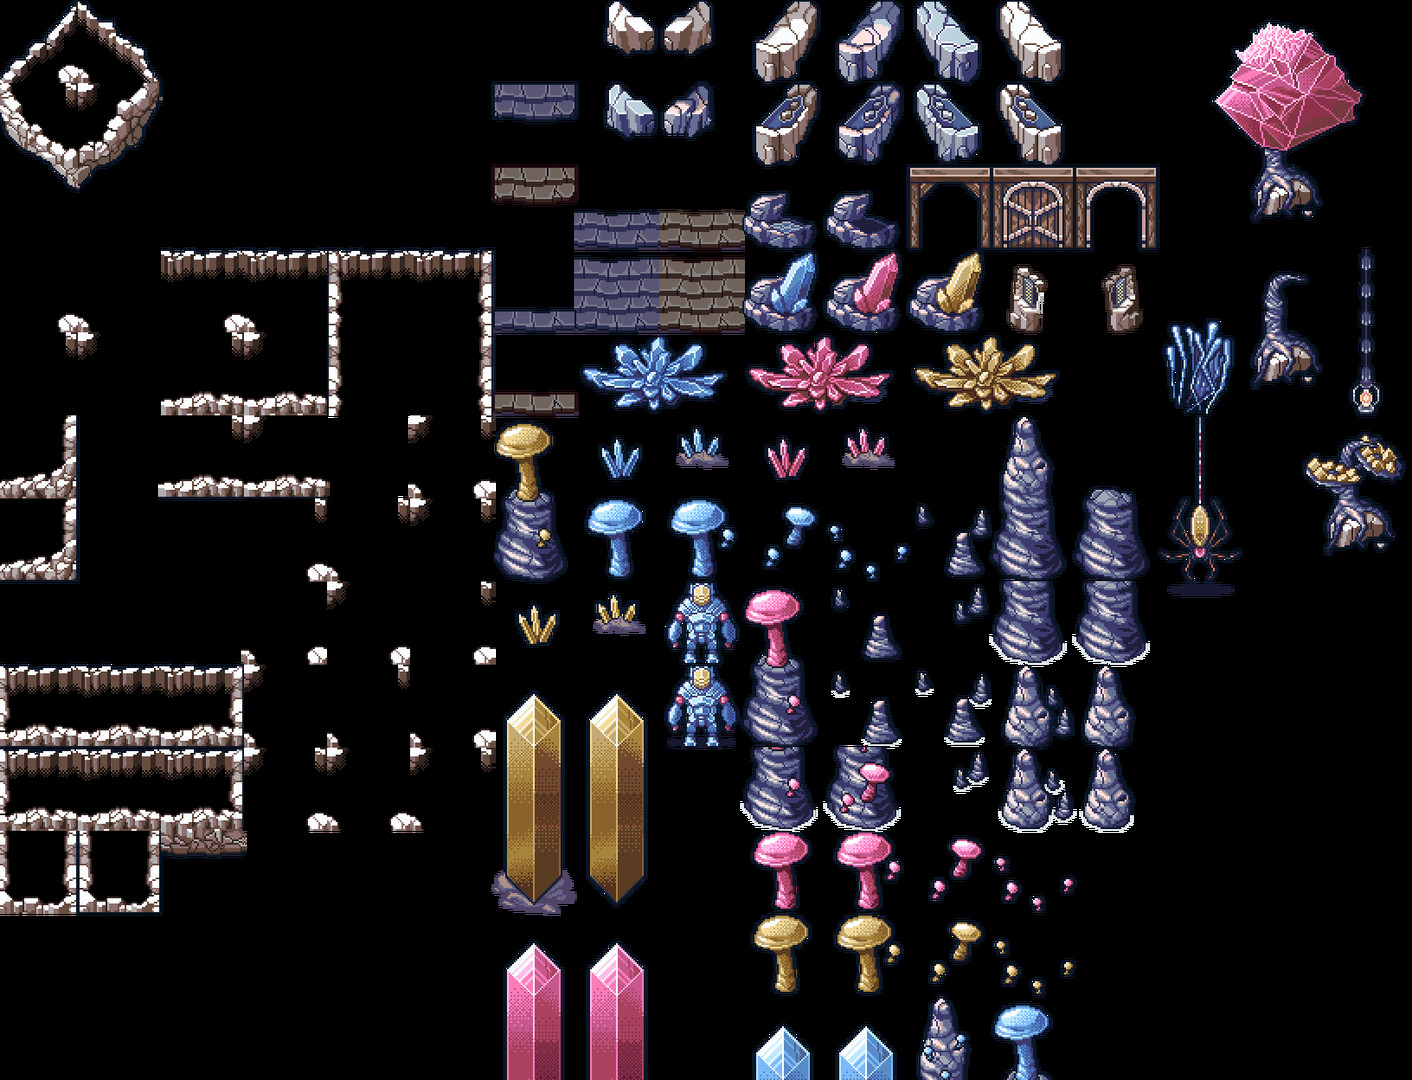 RPG Maker MZ - Crystal Cavern Asset Pack DLC